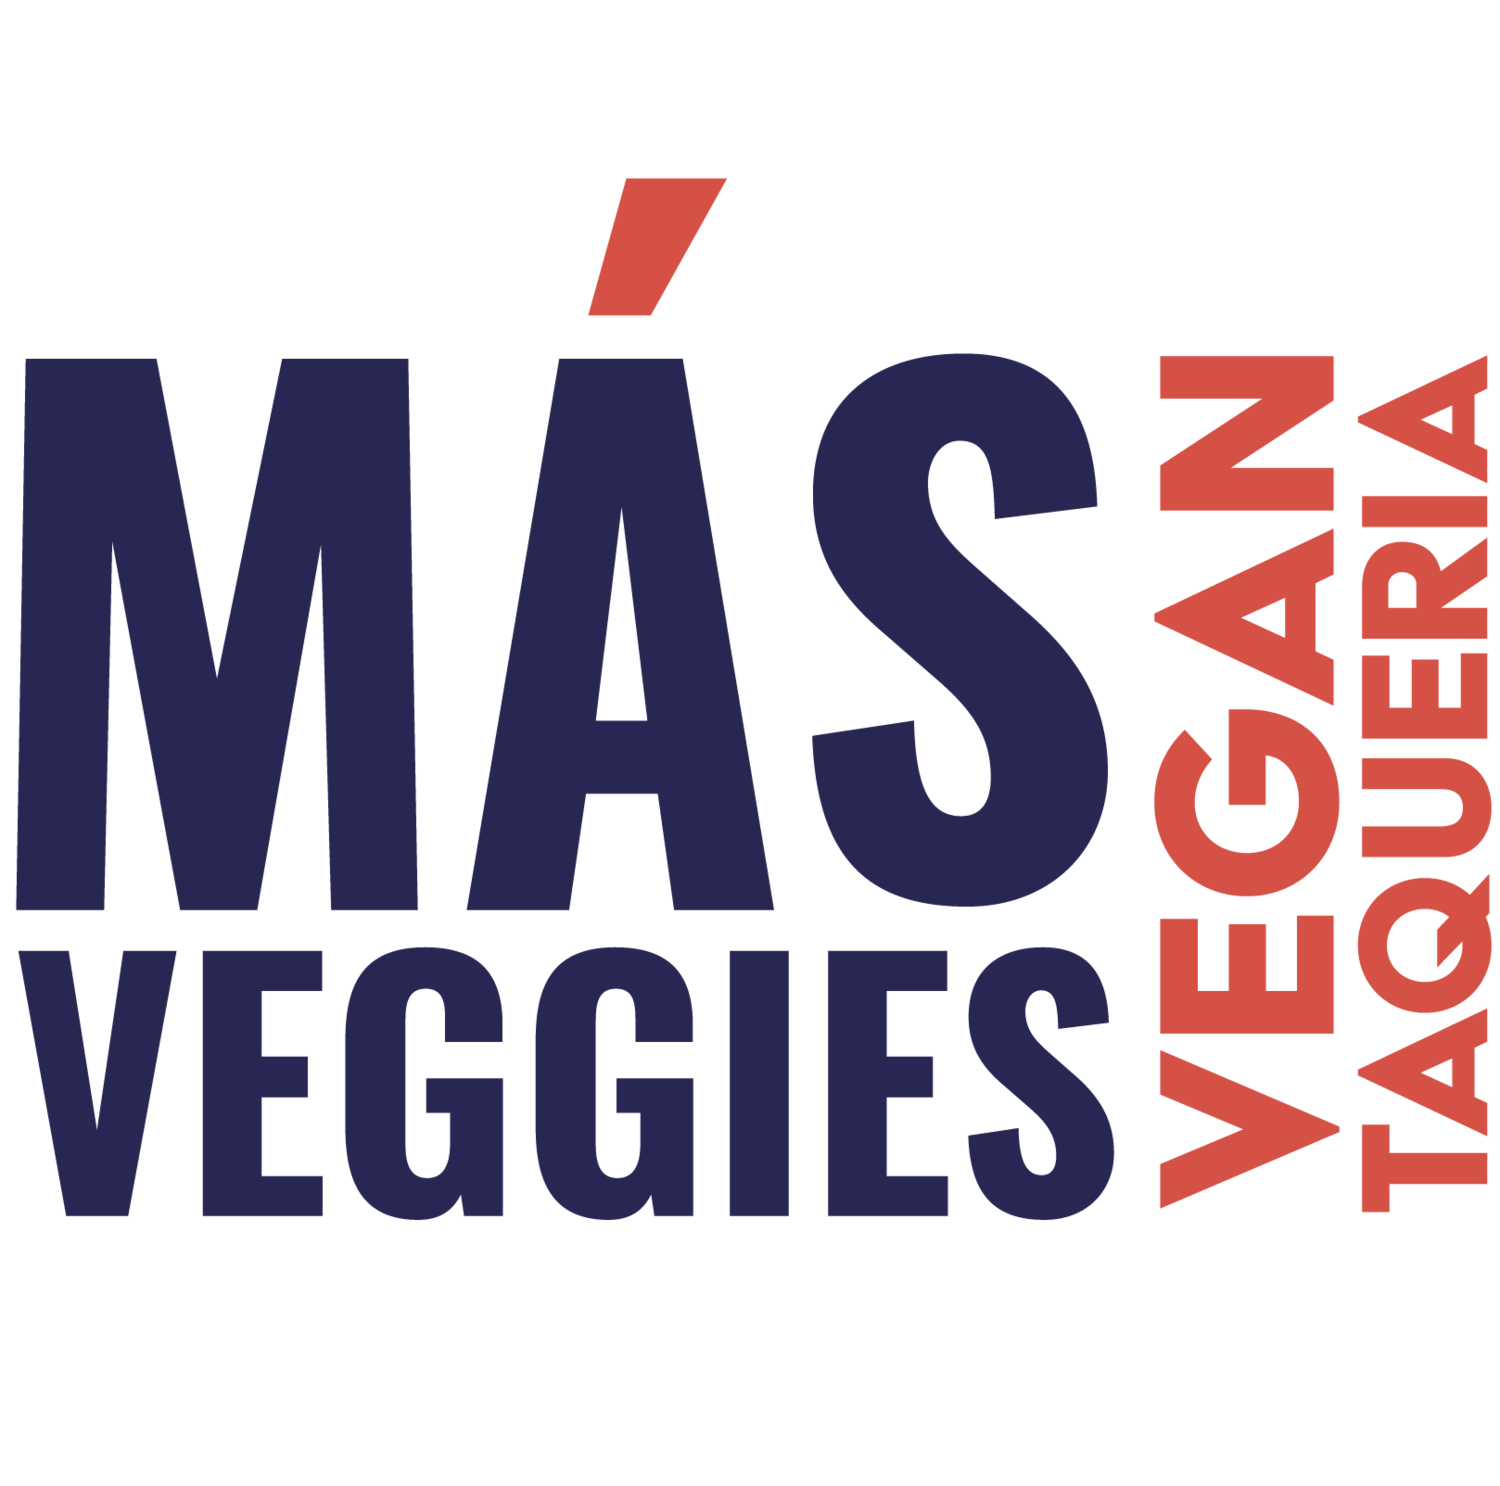 Más Veggies Vegan  Taqueria